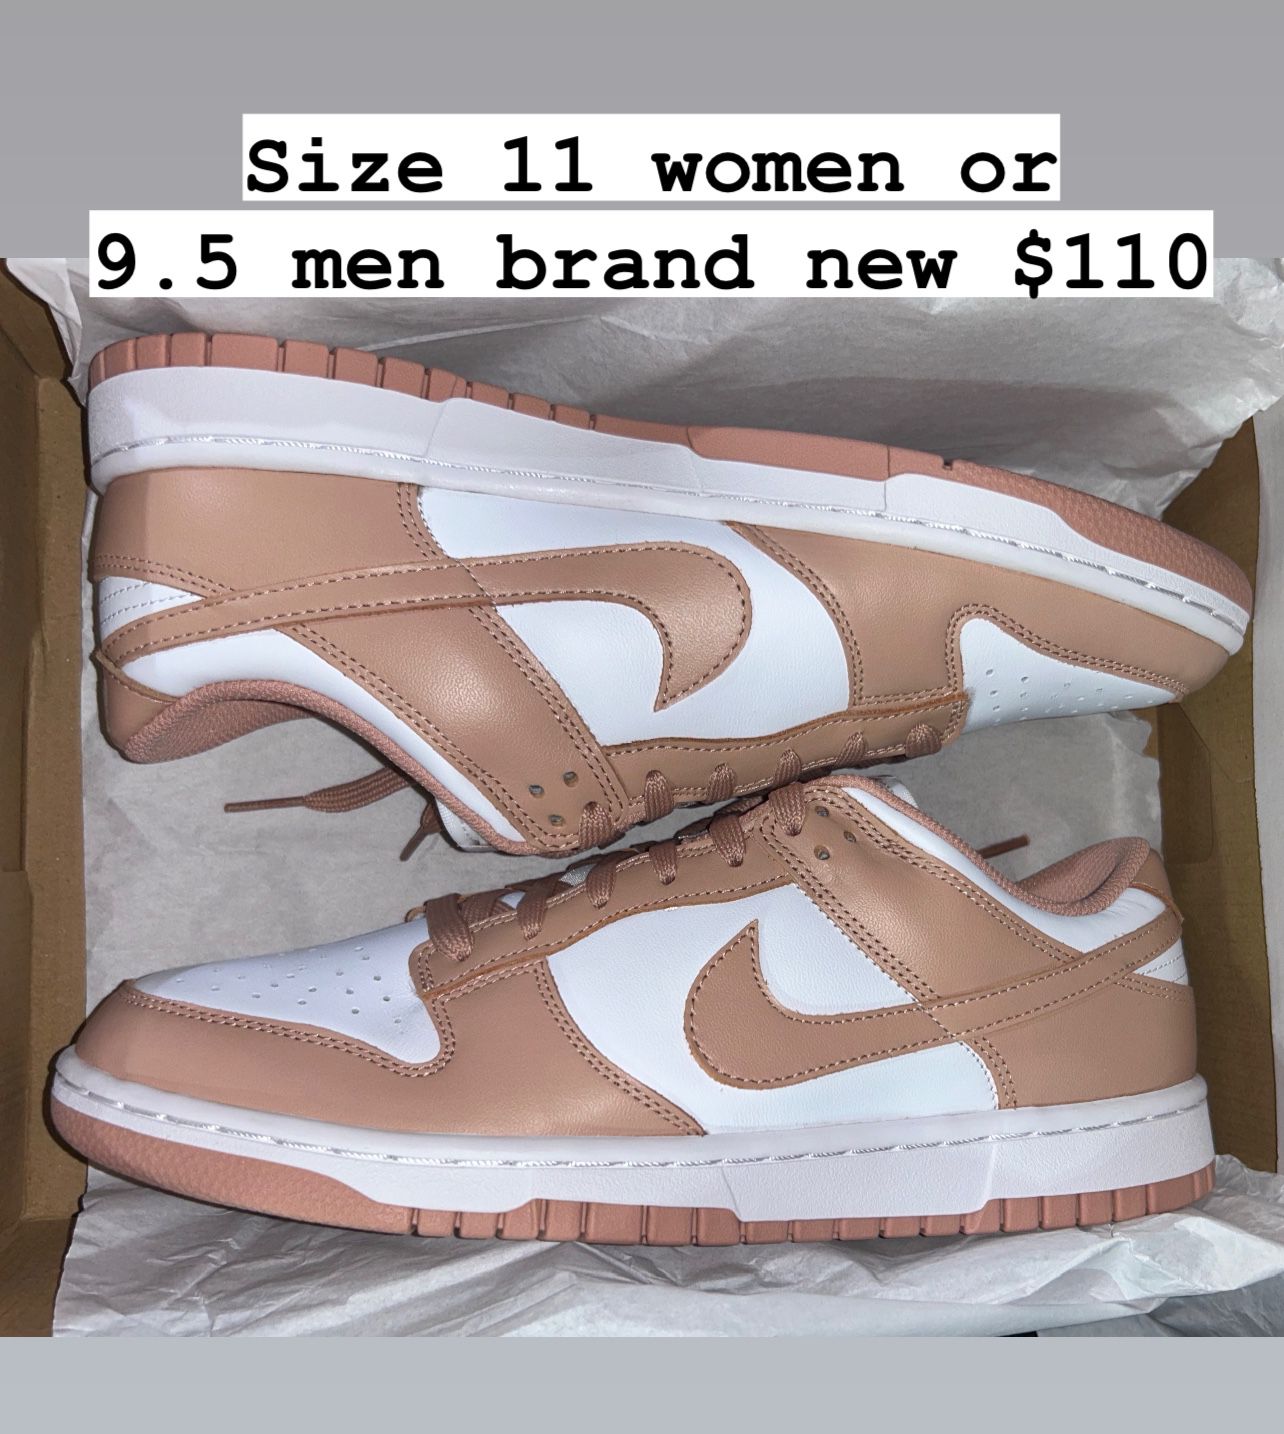 Nike Dunks Size 11 Women Or 9.5 Men Brand New 